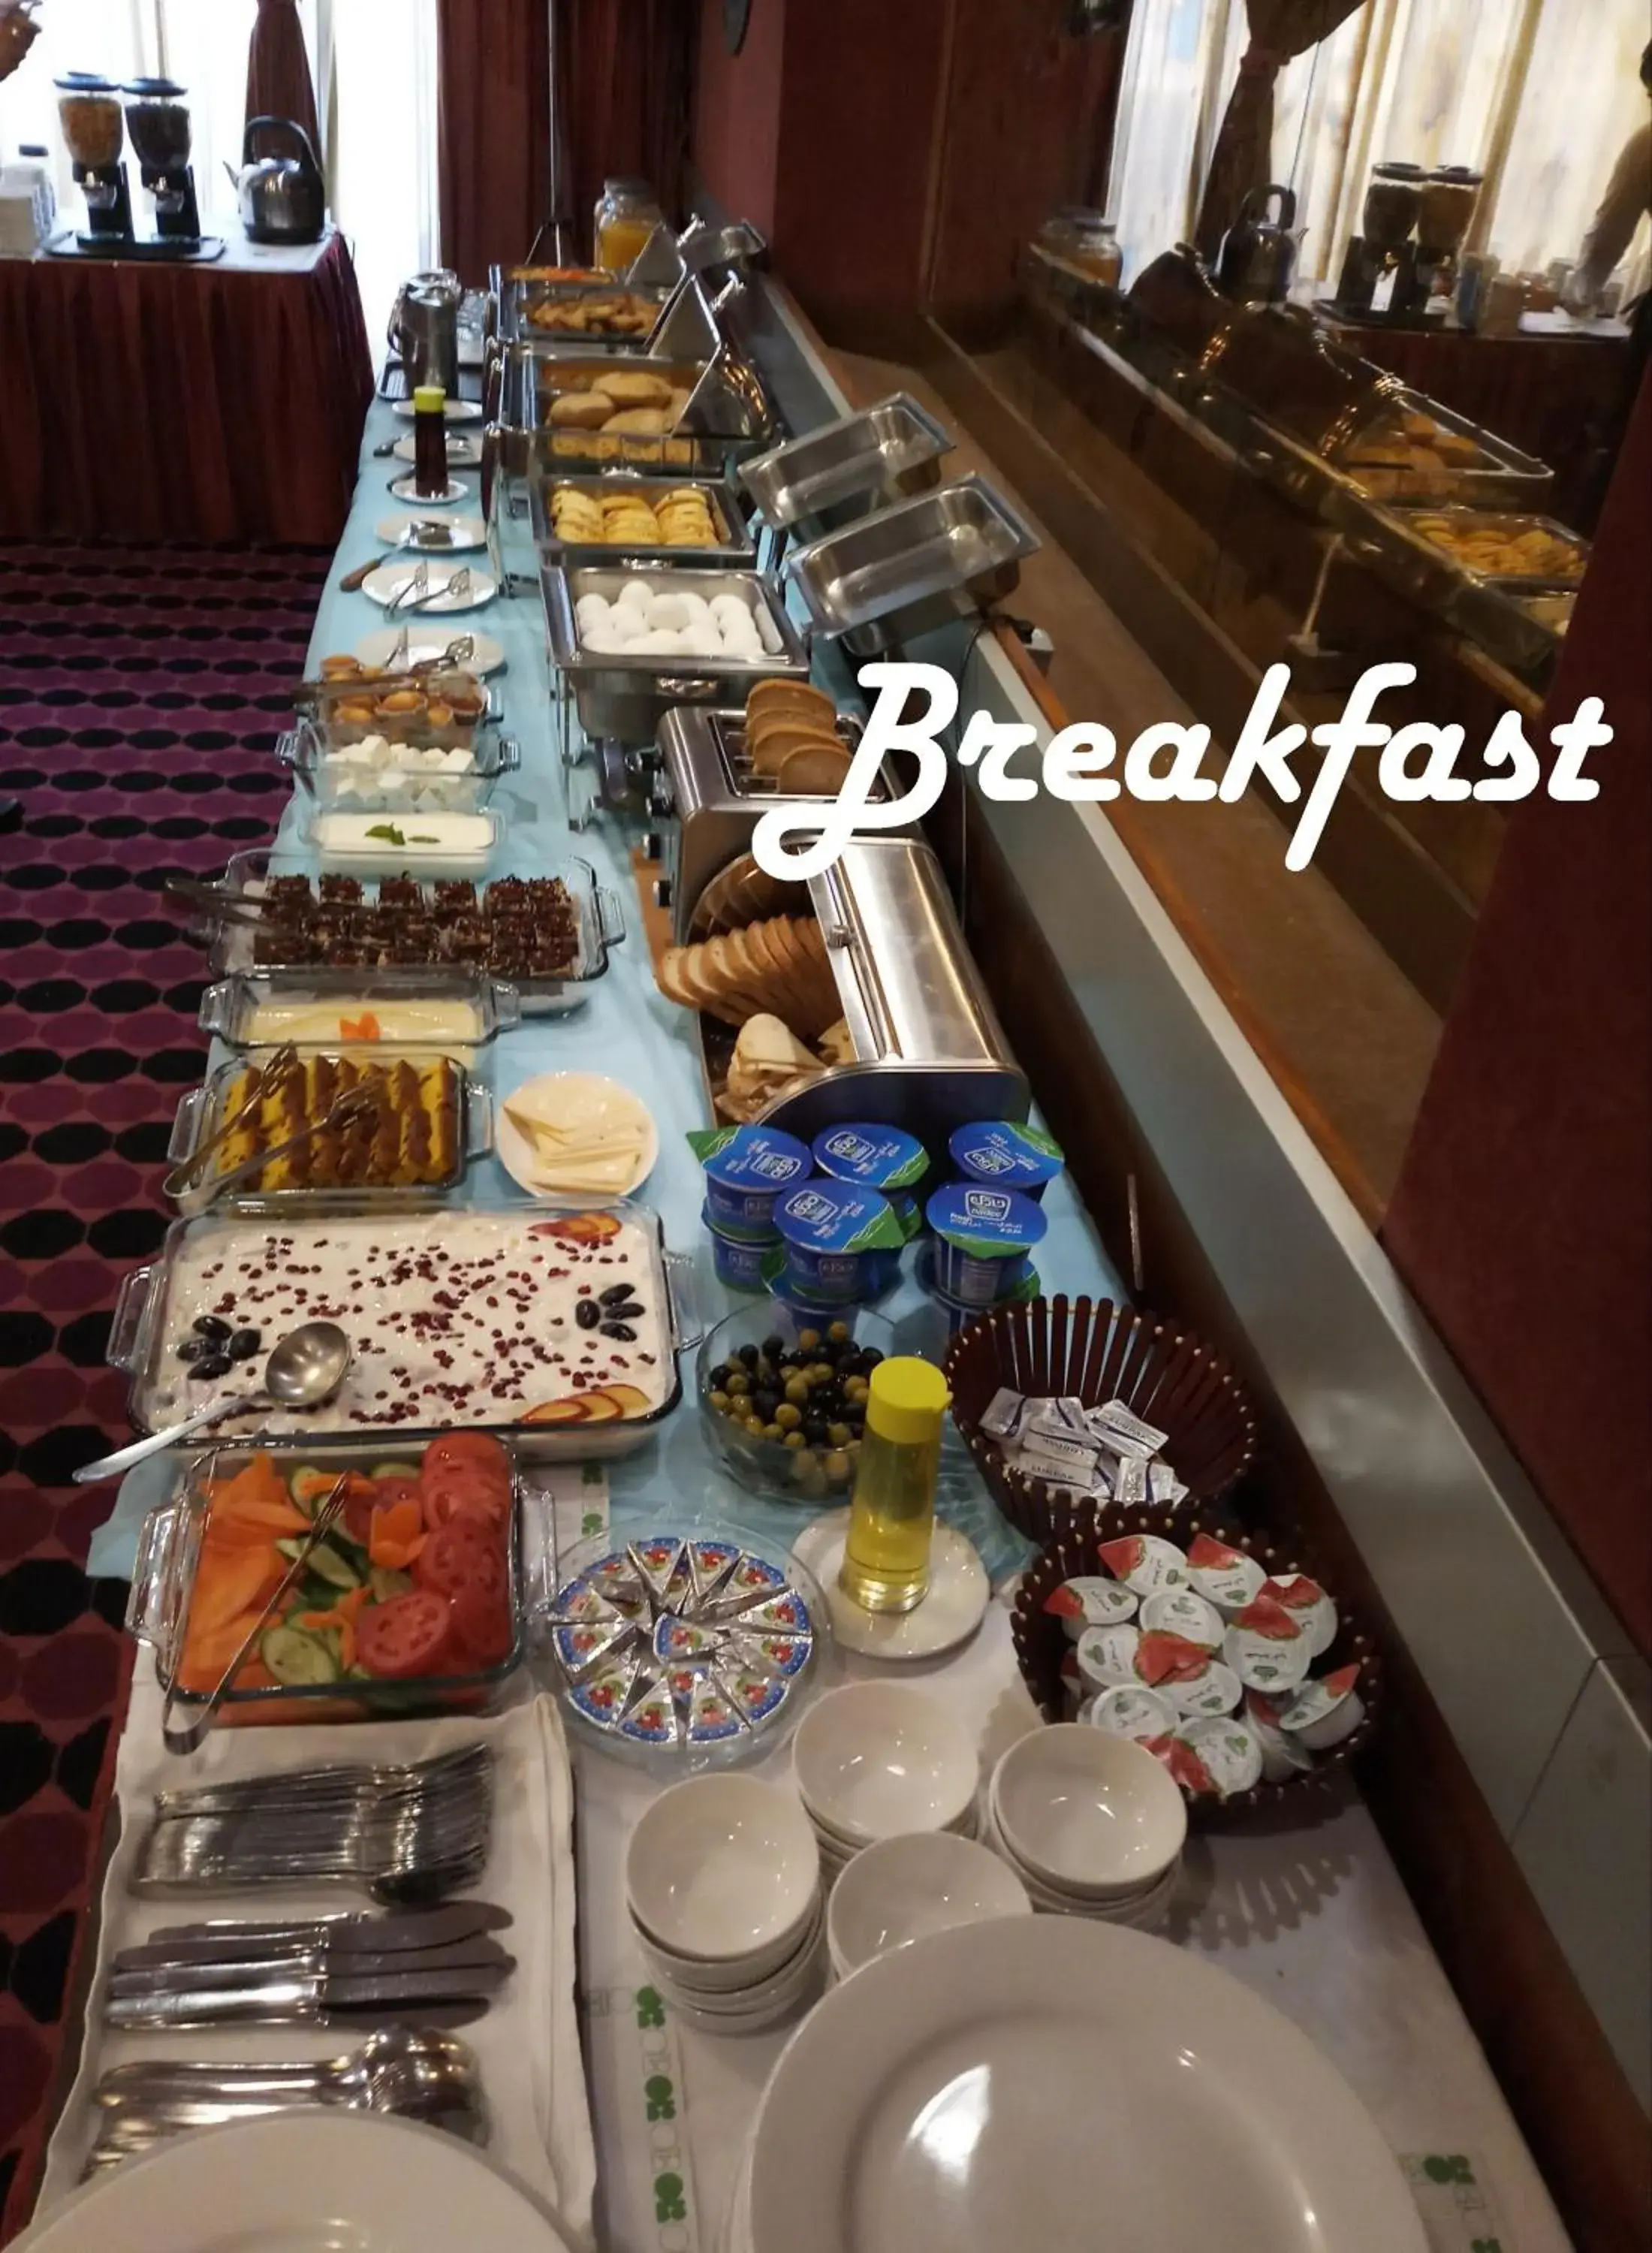 Buffet breakfast in Oriental Palace Hotel